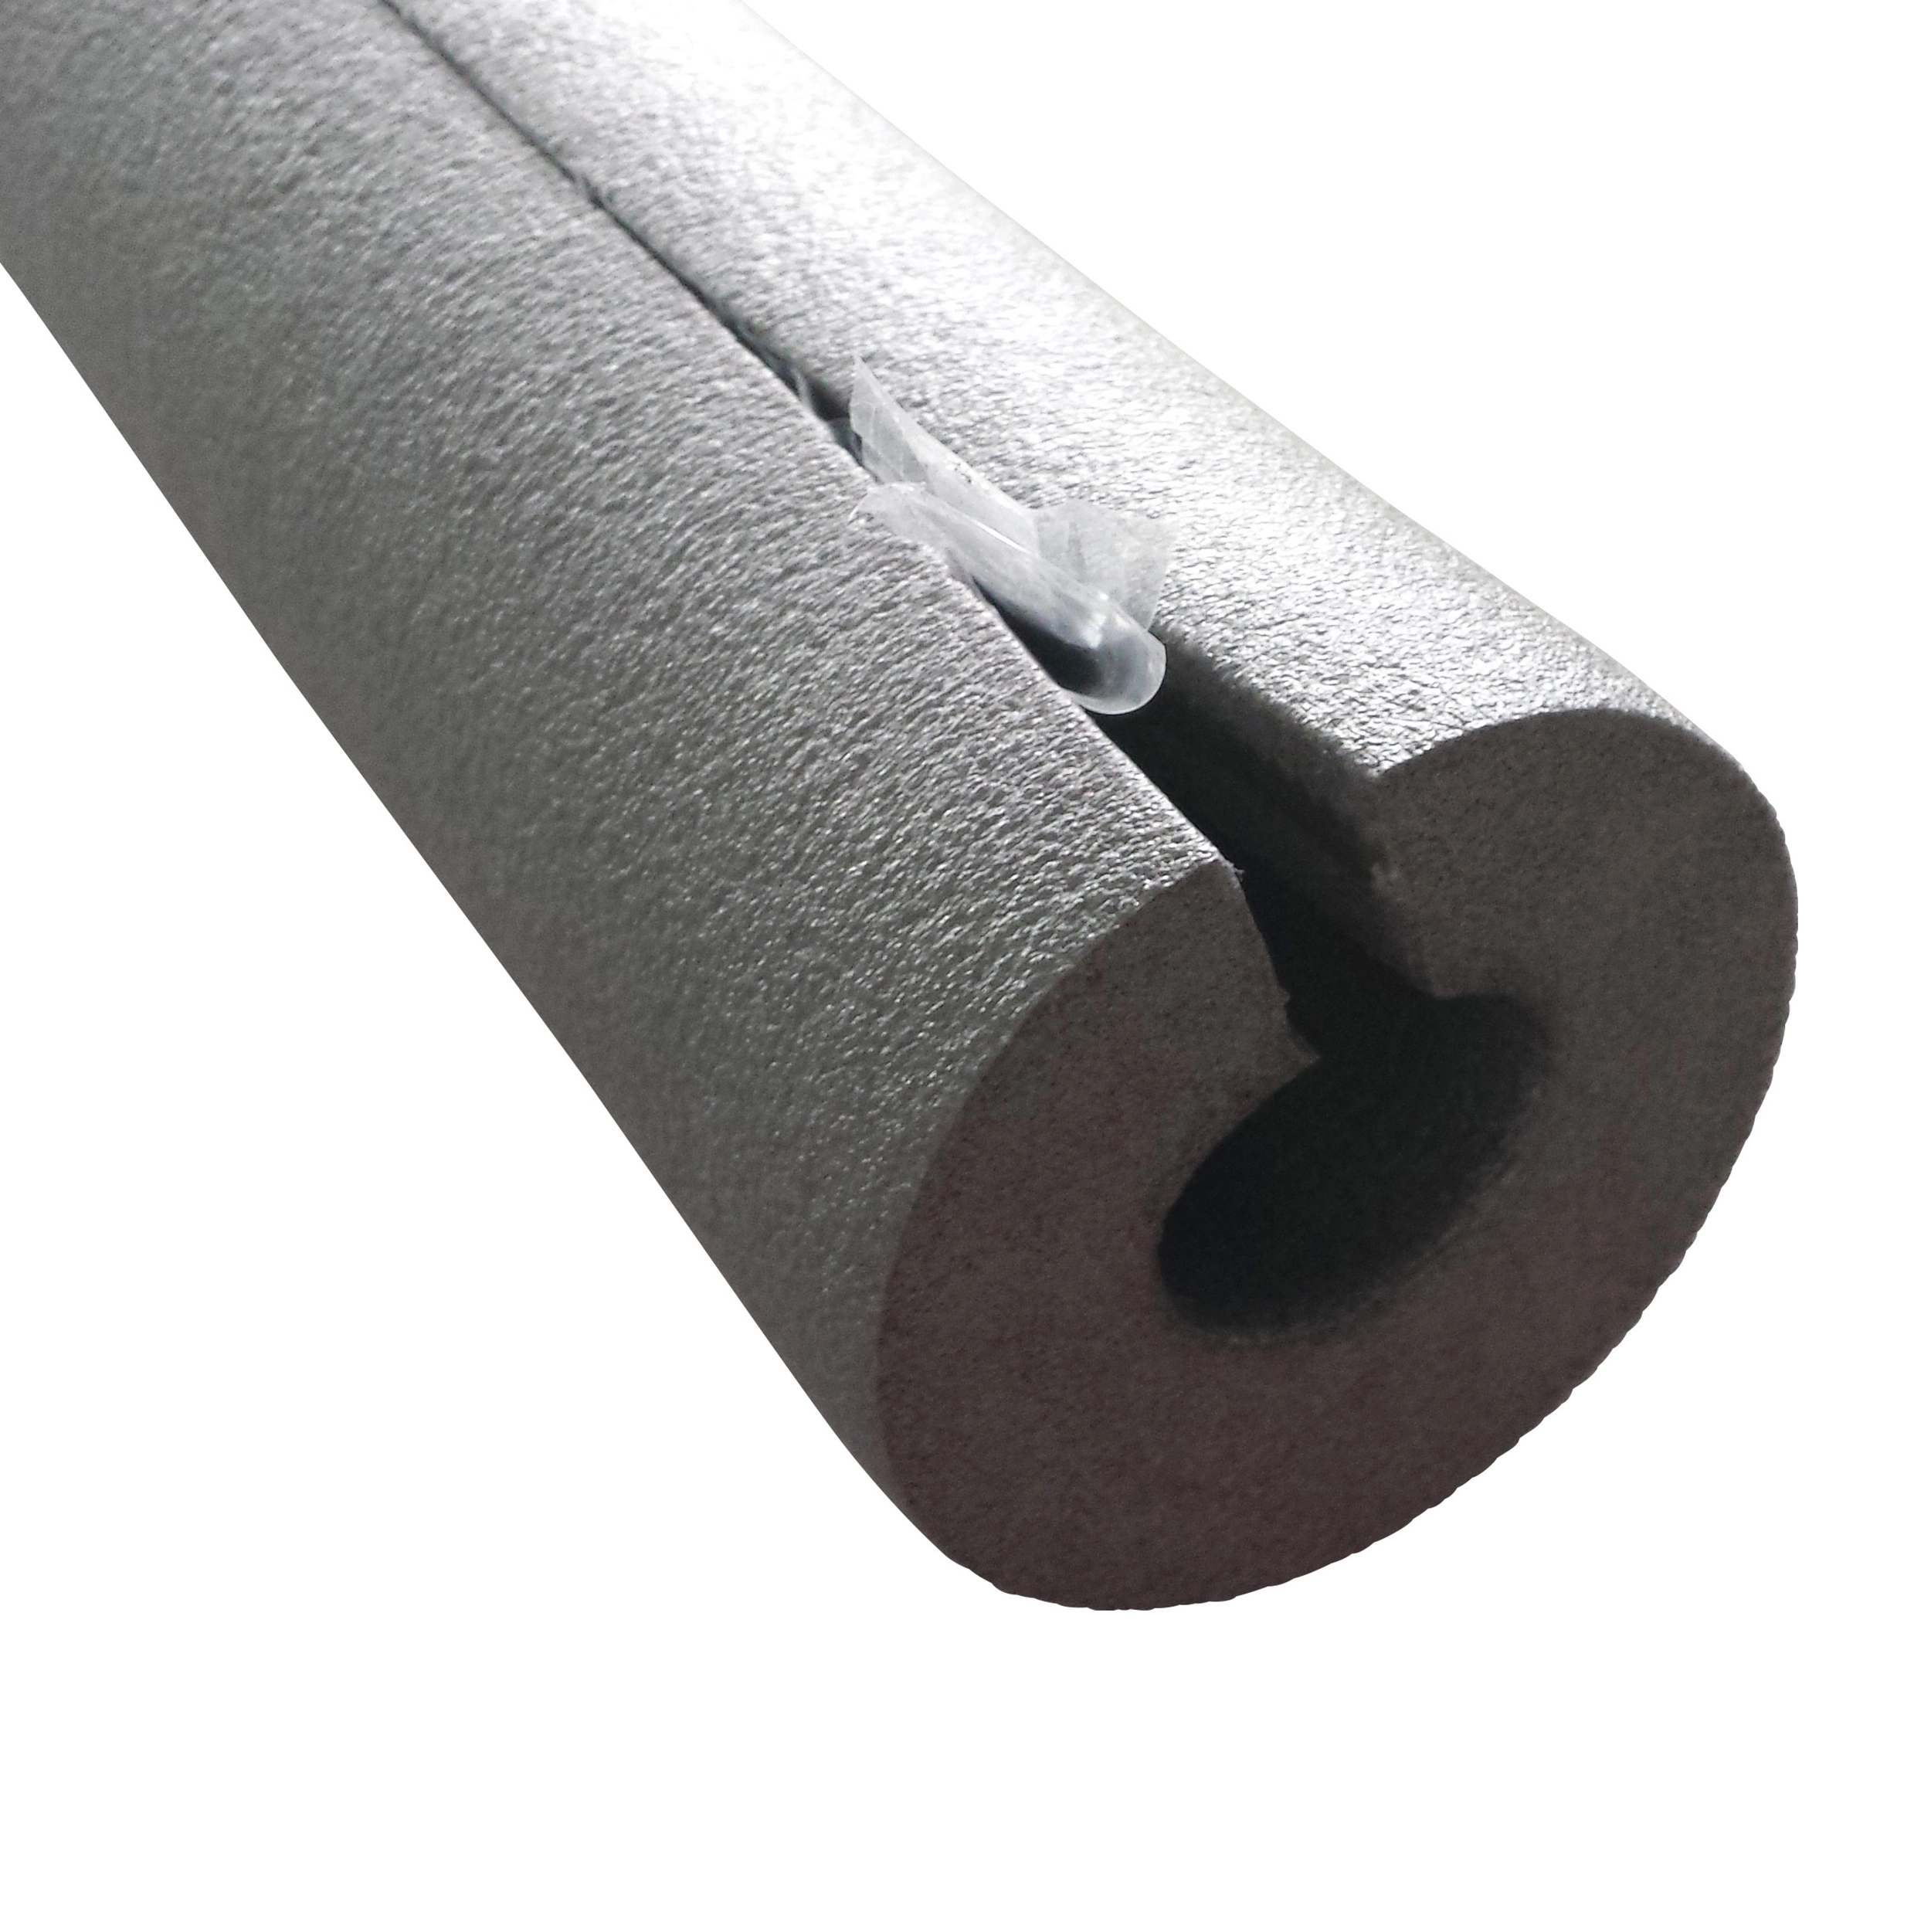 Manchon de protection pour tuyaux NMC ø15 mm L.1 m